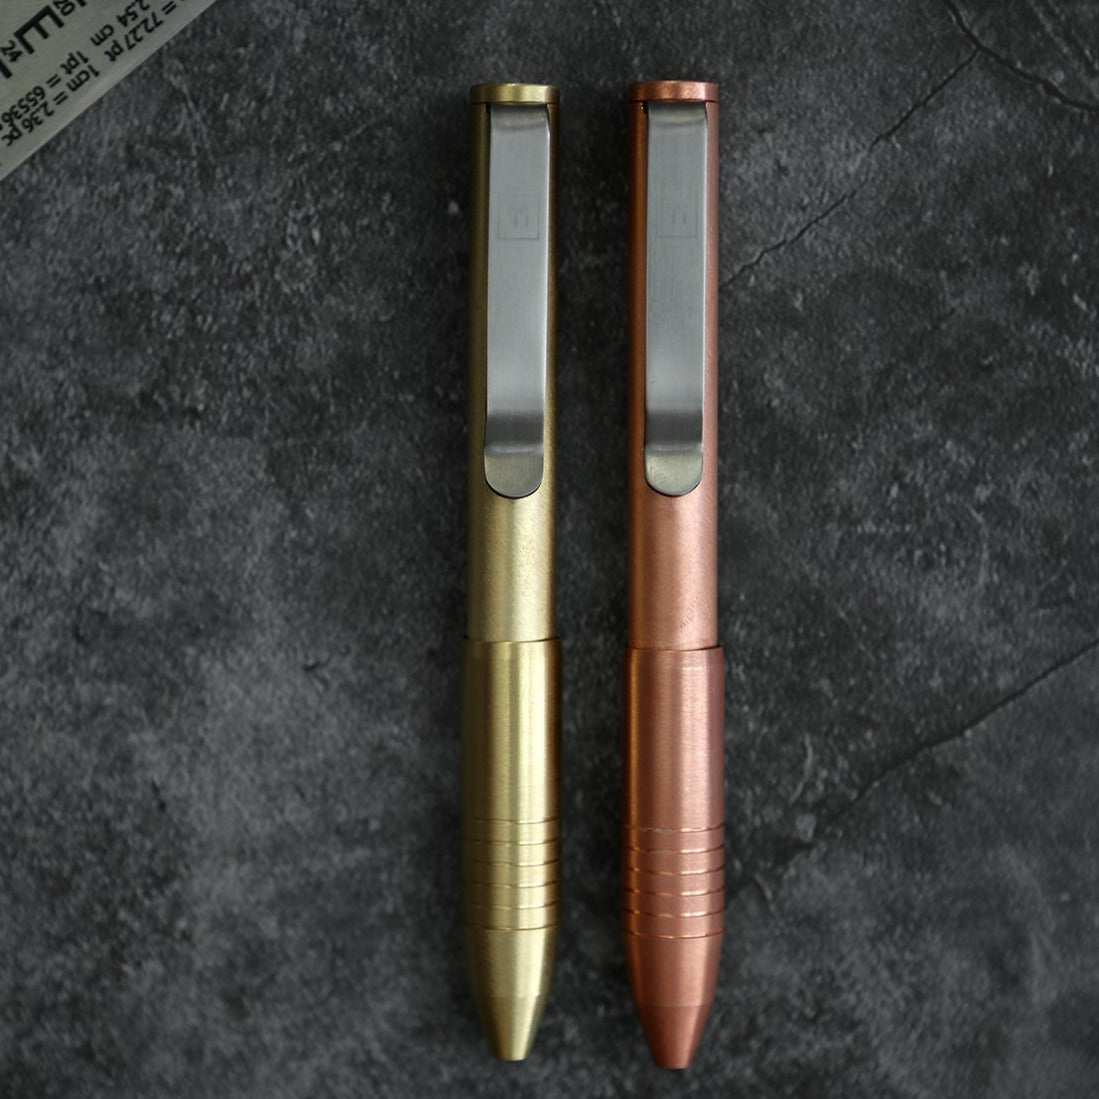 Copper Pens: The Future is Bright